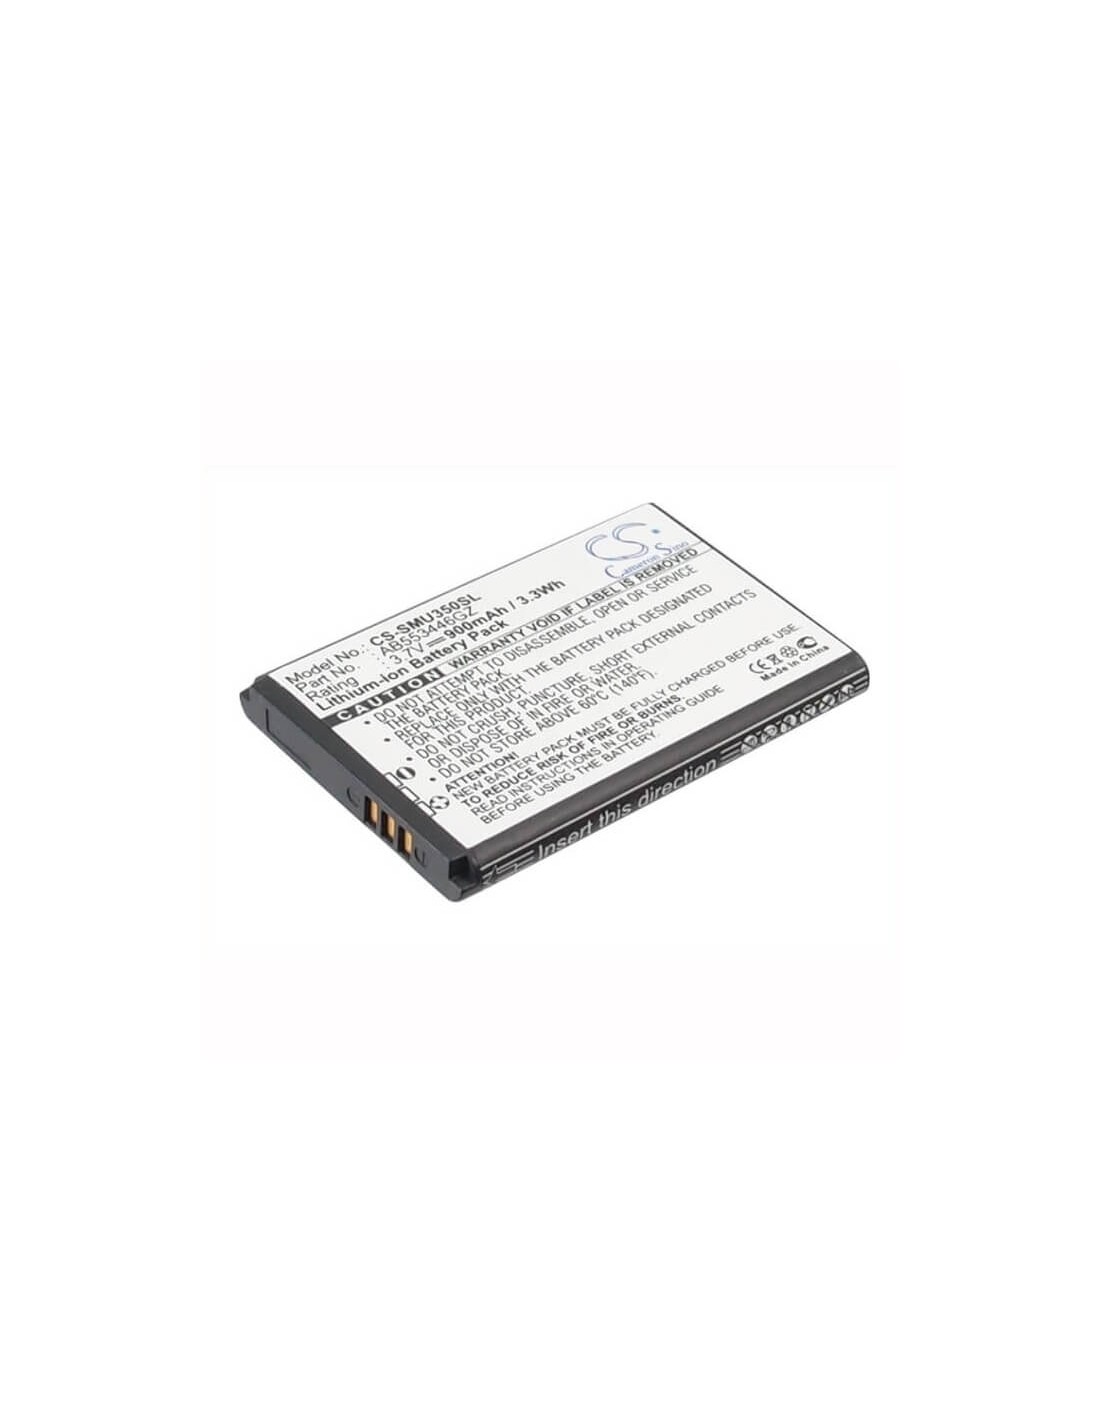 Battery for Samsung SCH-U310, Knack U310, SCH-U410 3.7V, 900mAh - 3.33Wh